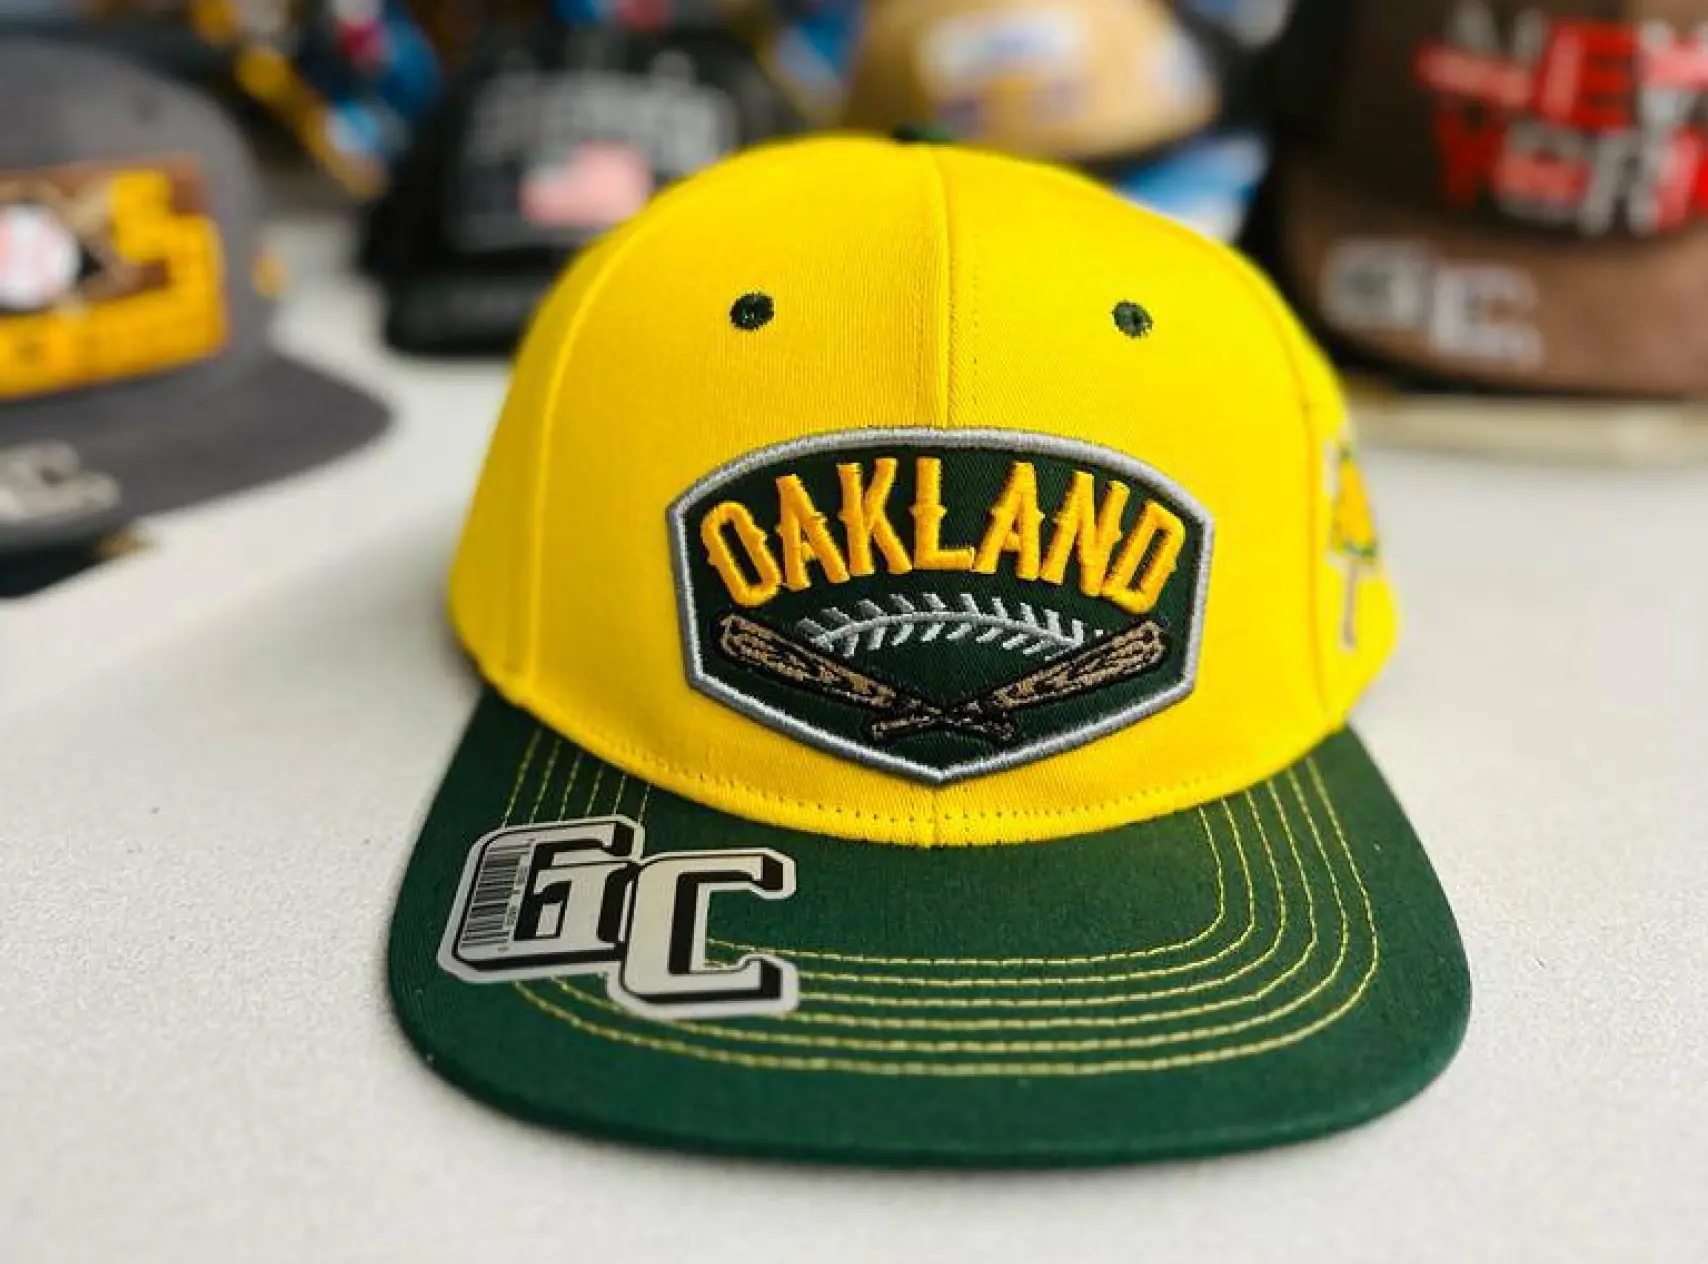 Oakland cap